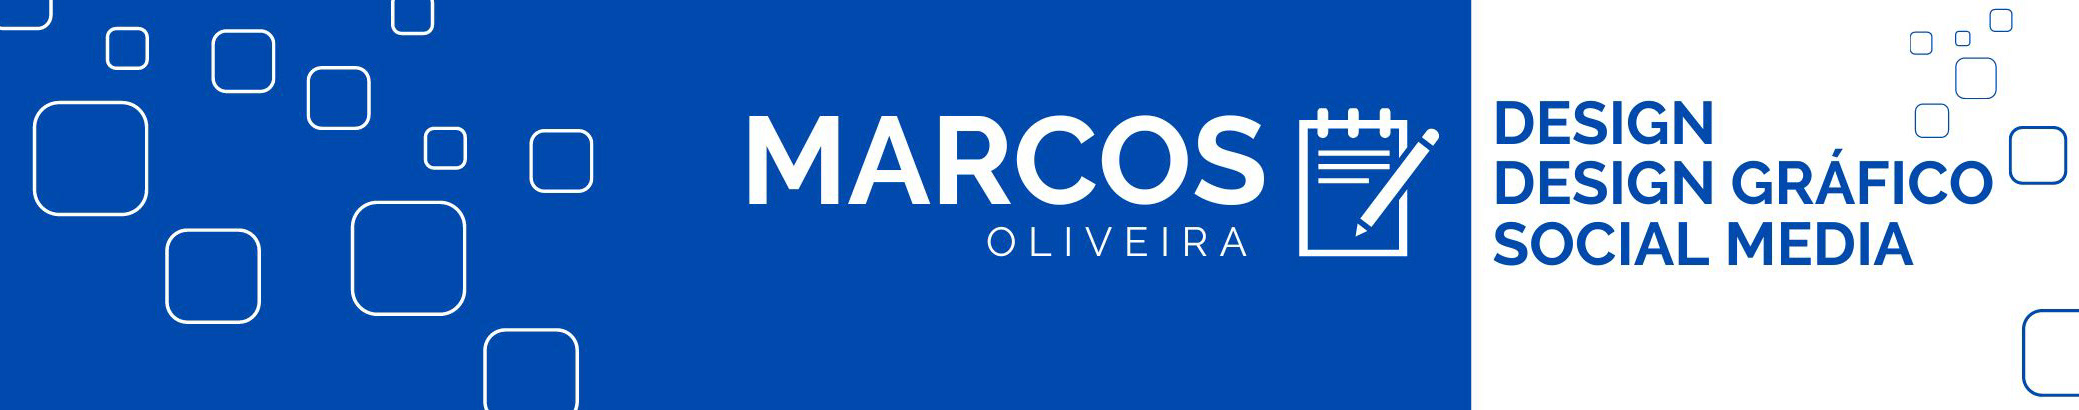 Banner de perfil de Marcos Oliveira